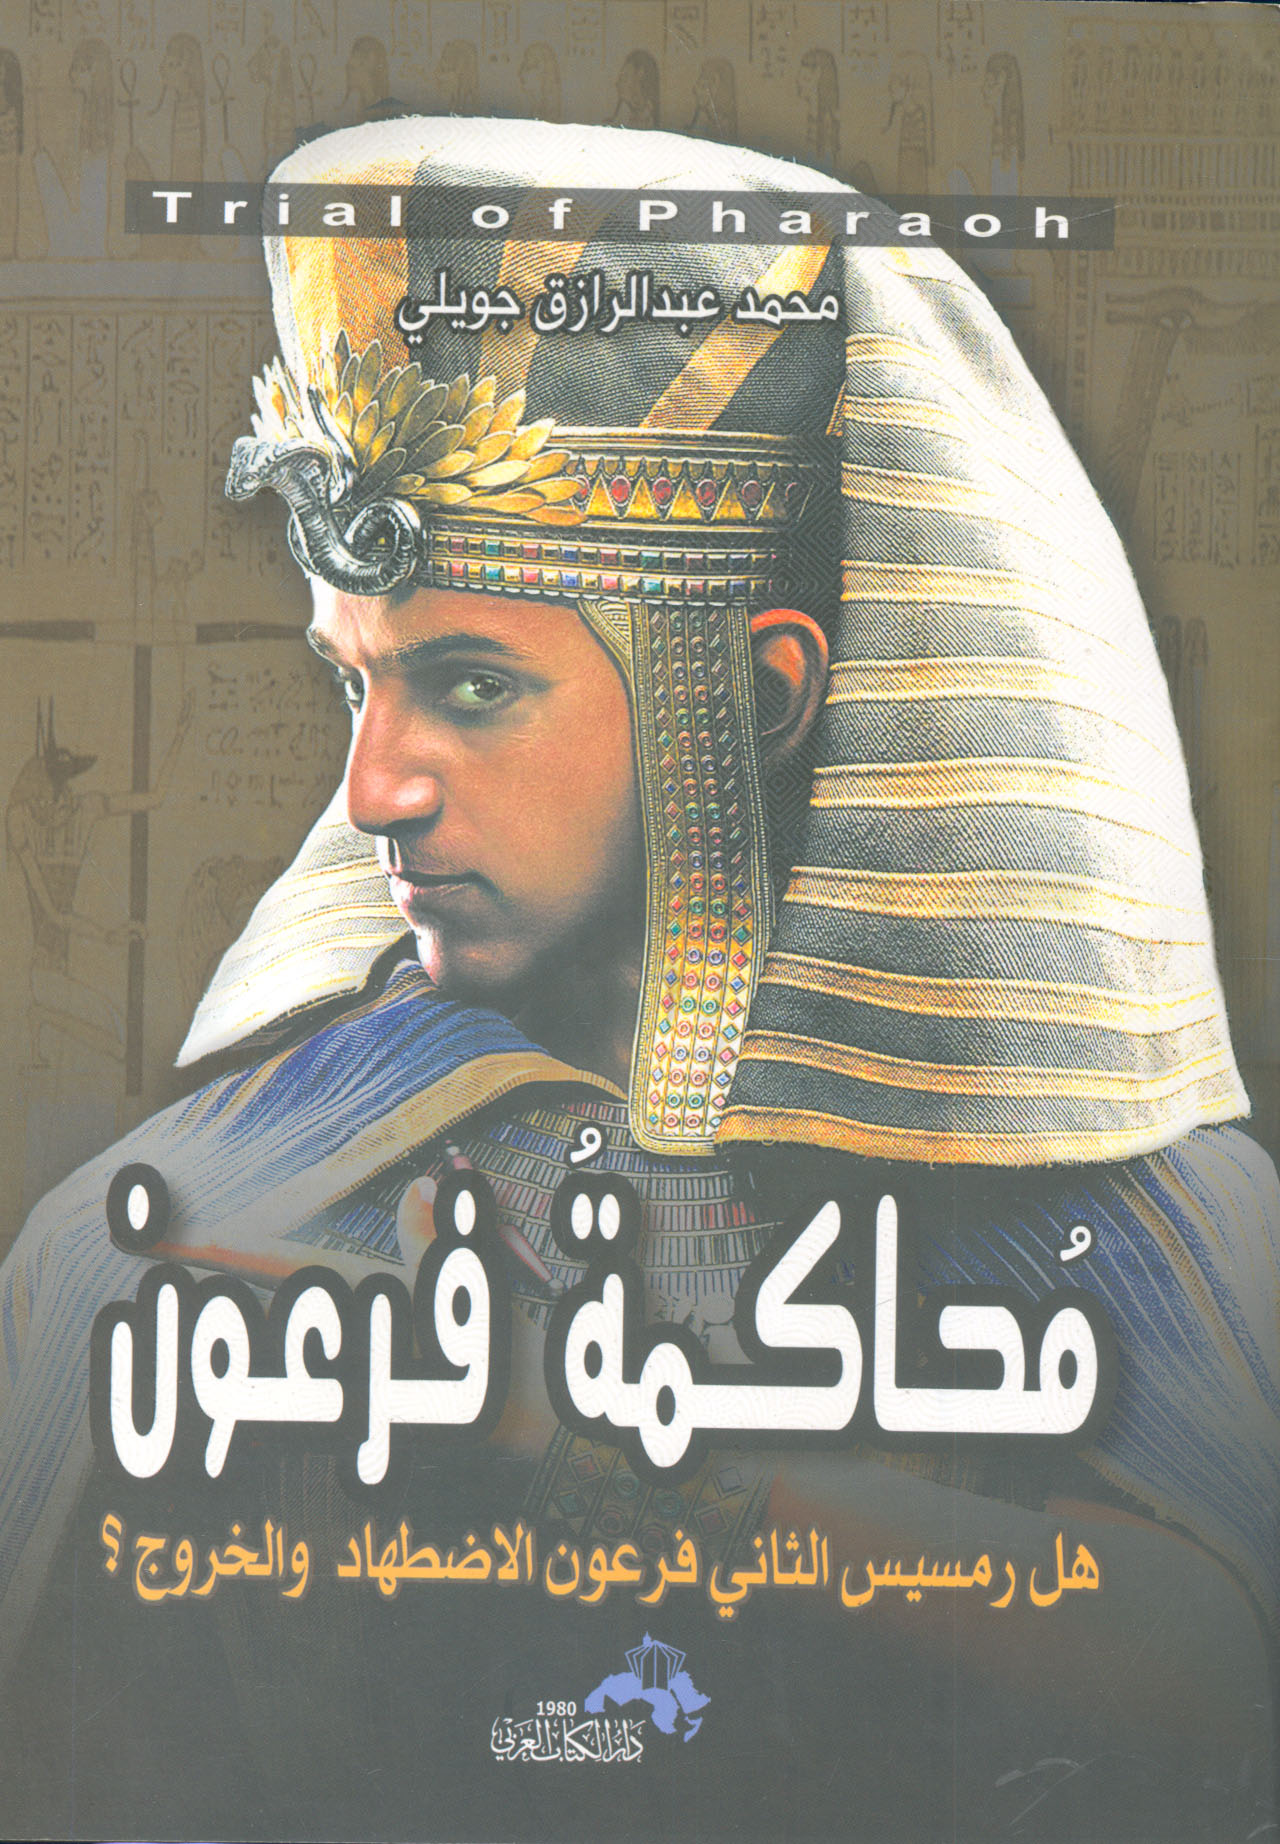 محاكمة فرعون.. هل رمسيس الثاني فرعون الاضطهاد والخروج؟